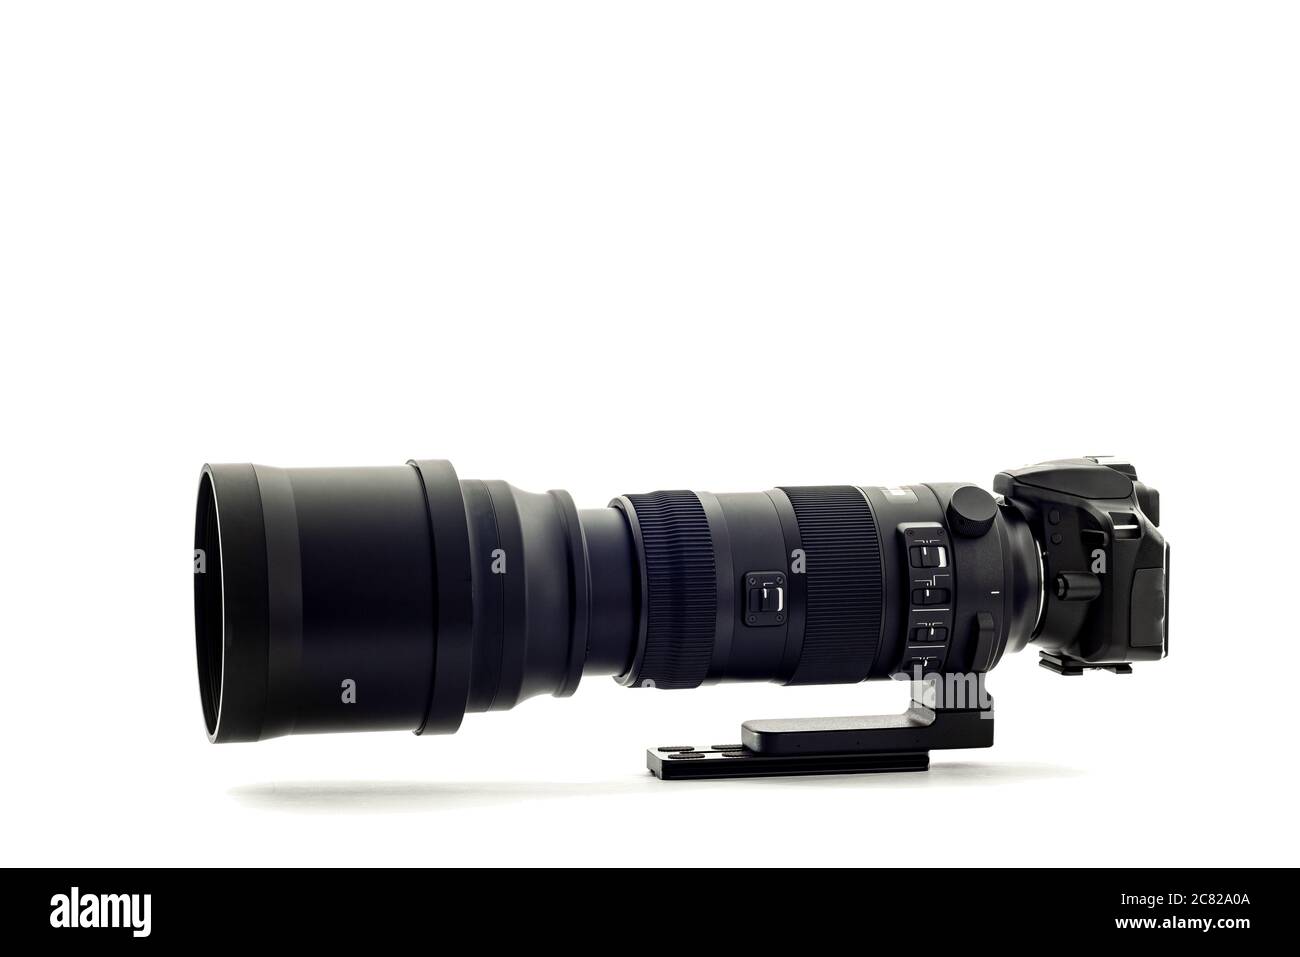 Scatto orizzontale di una moderna fotocamera reflex digitale con super teleobiettivo zoom su sfondo bianco. Foto Stock